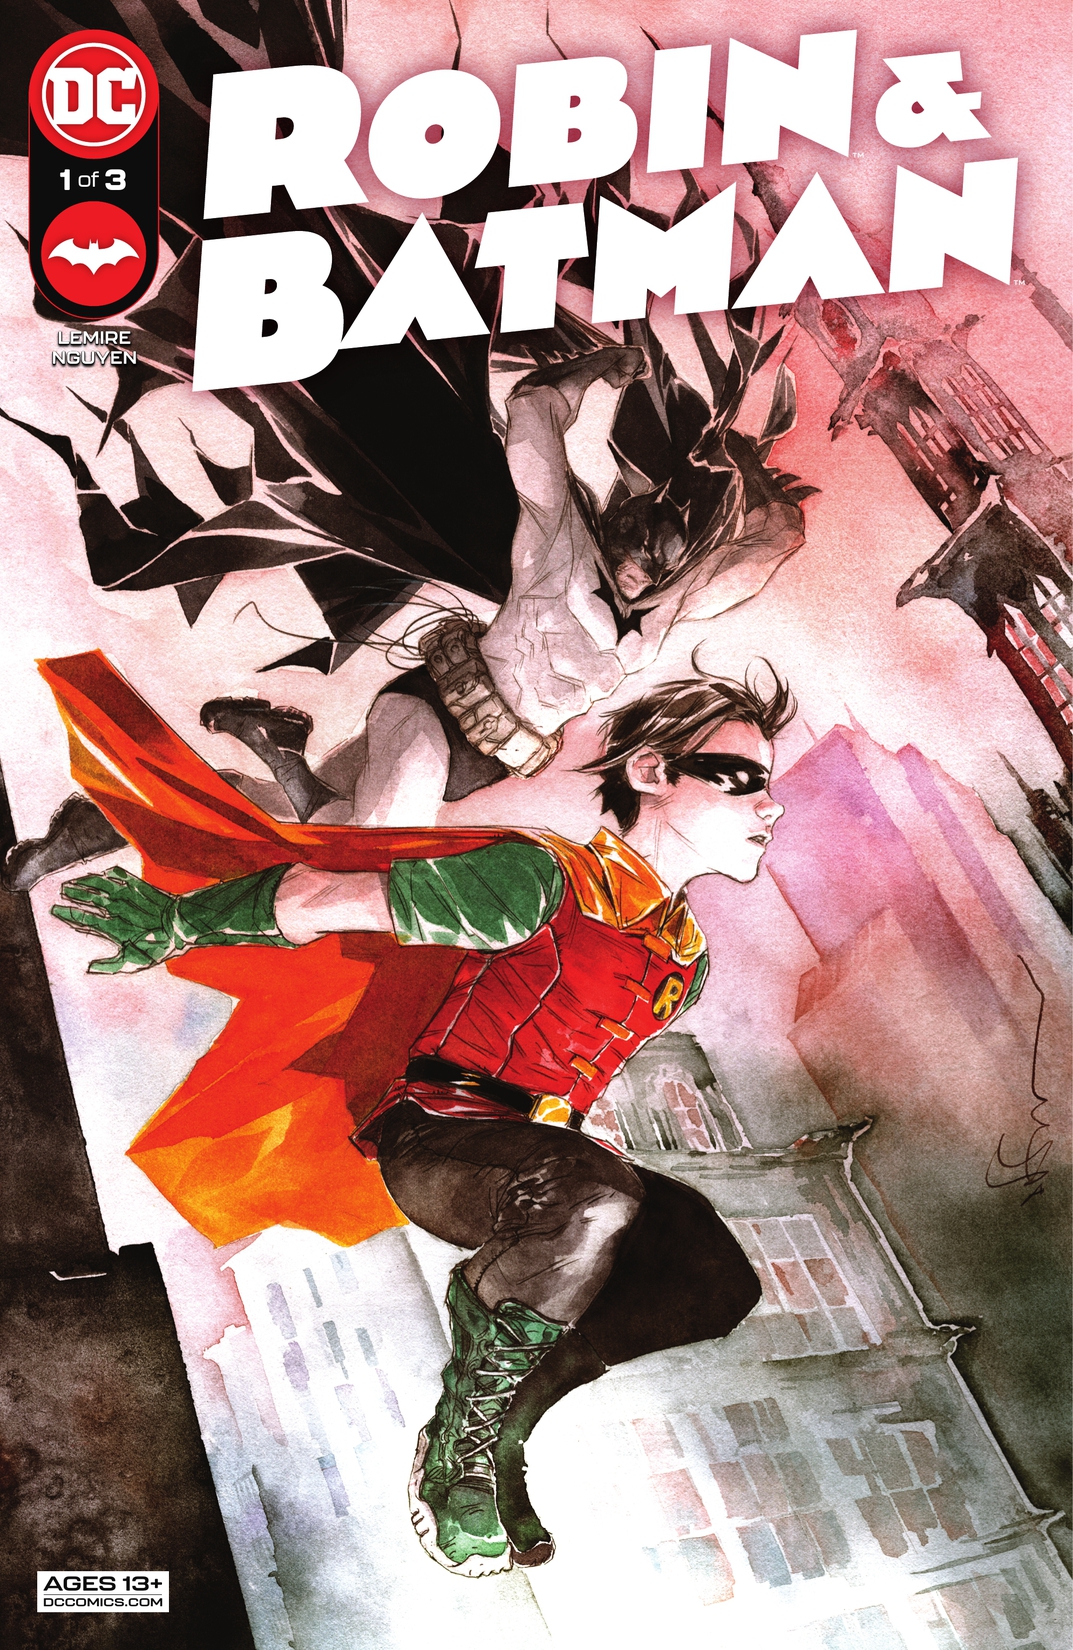 Robin & Batman #1 preview images